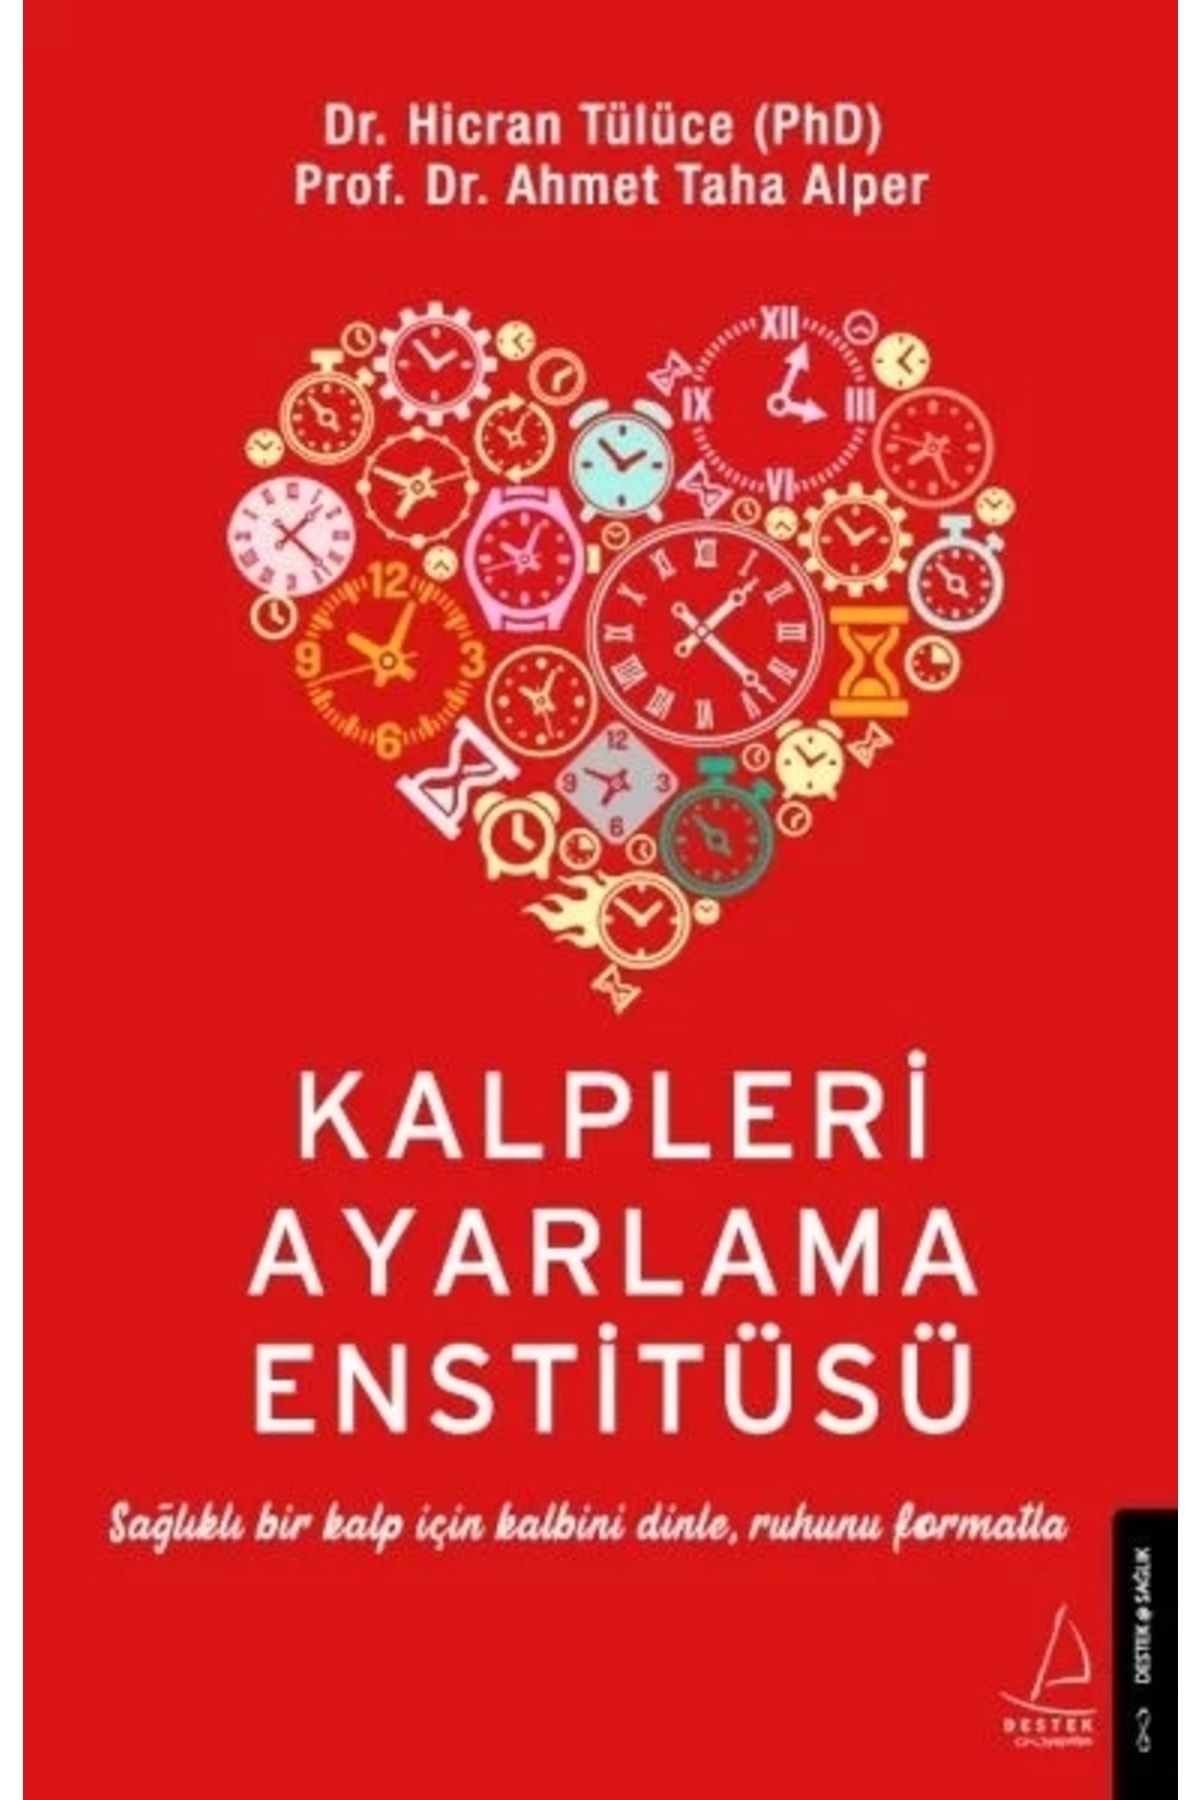 Destek Yayınları Kalpleri Ayarlama Enstitüsü